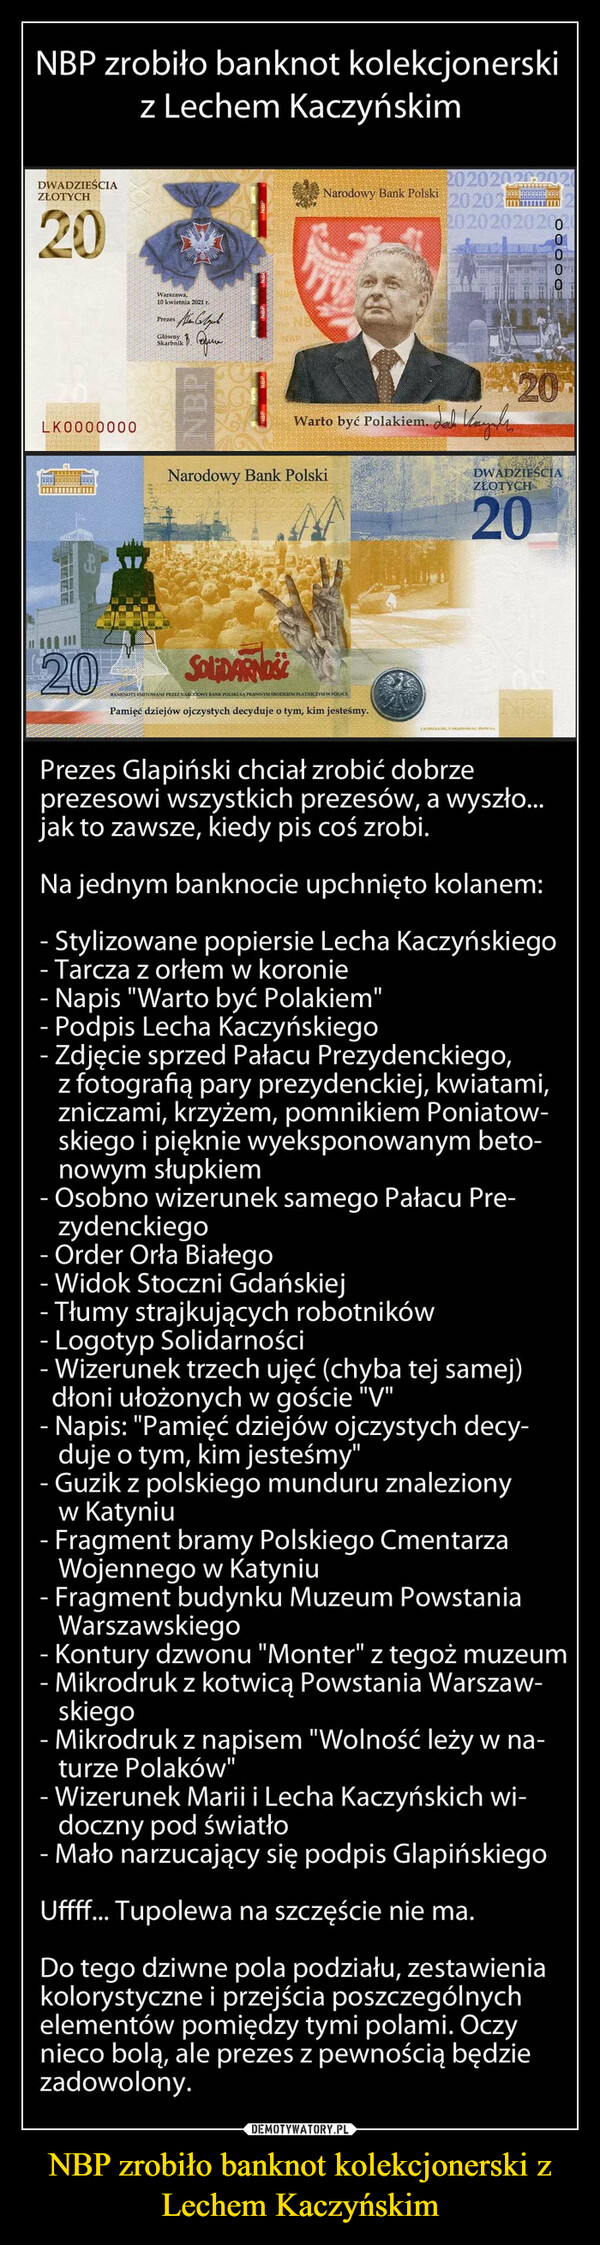 NBP zrobiło banknot kolekcjonerski z Lechem Kaczyńskim –  